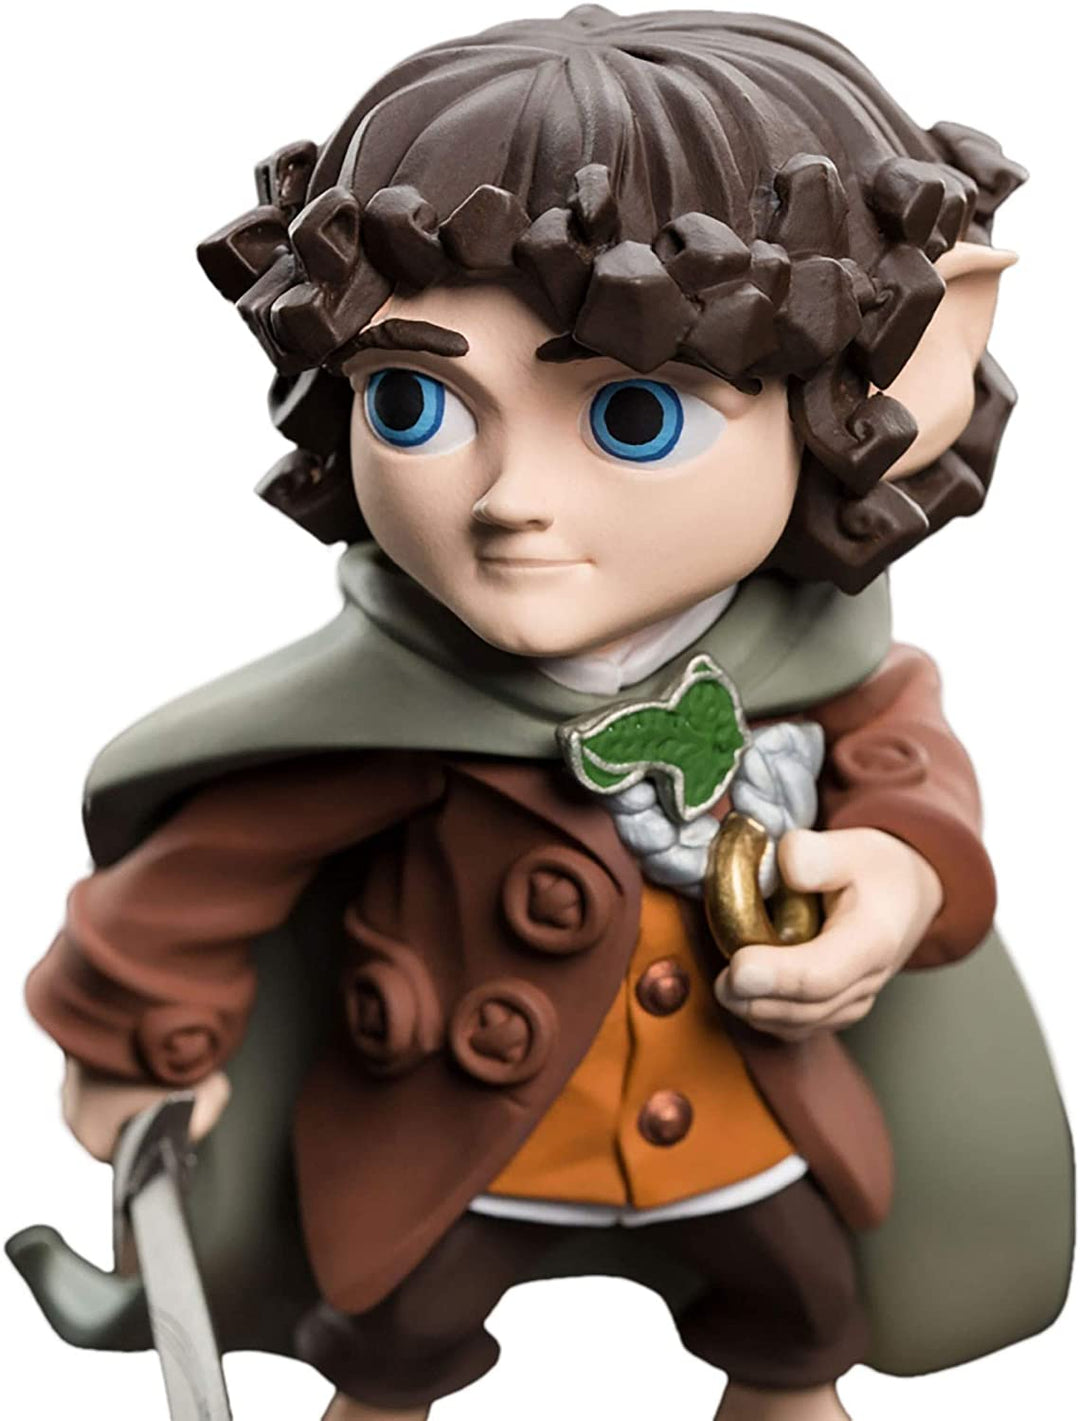 Herr der Ringe Mini-Epen – Frodo Beutlin